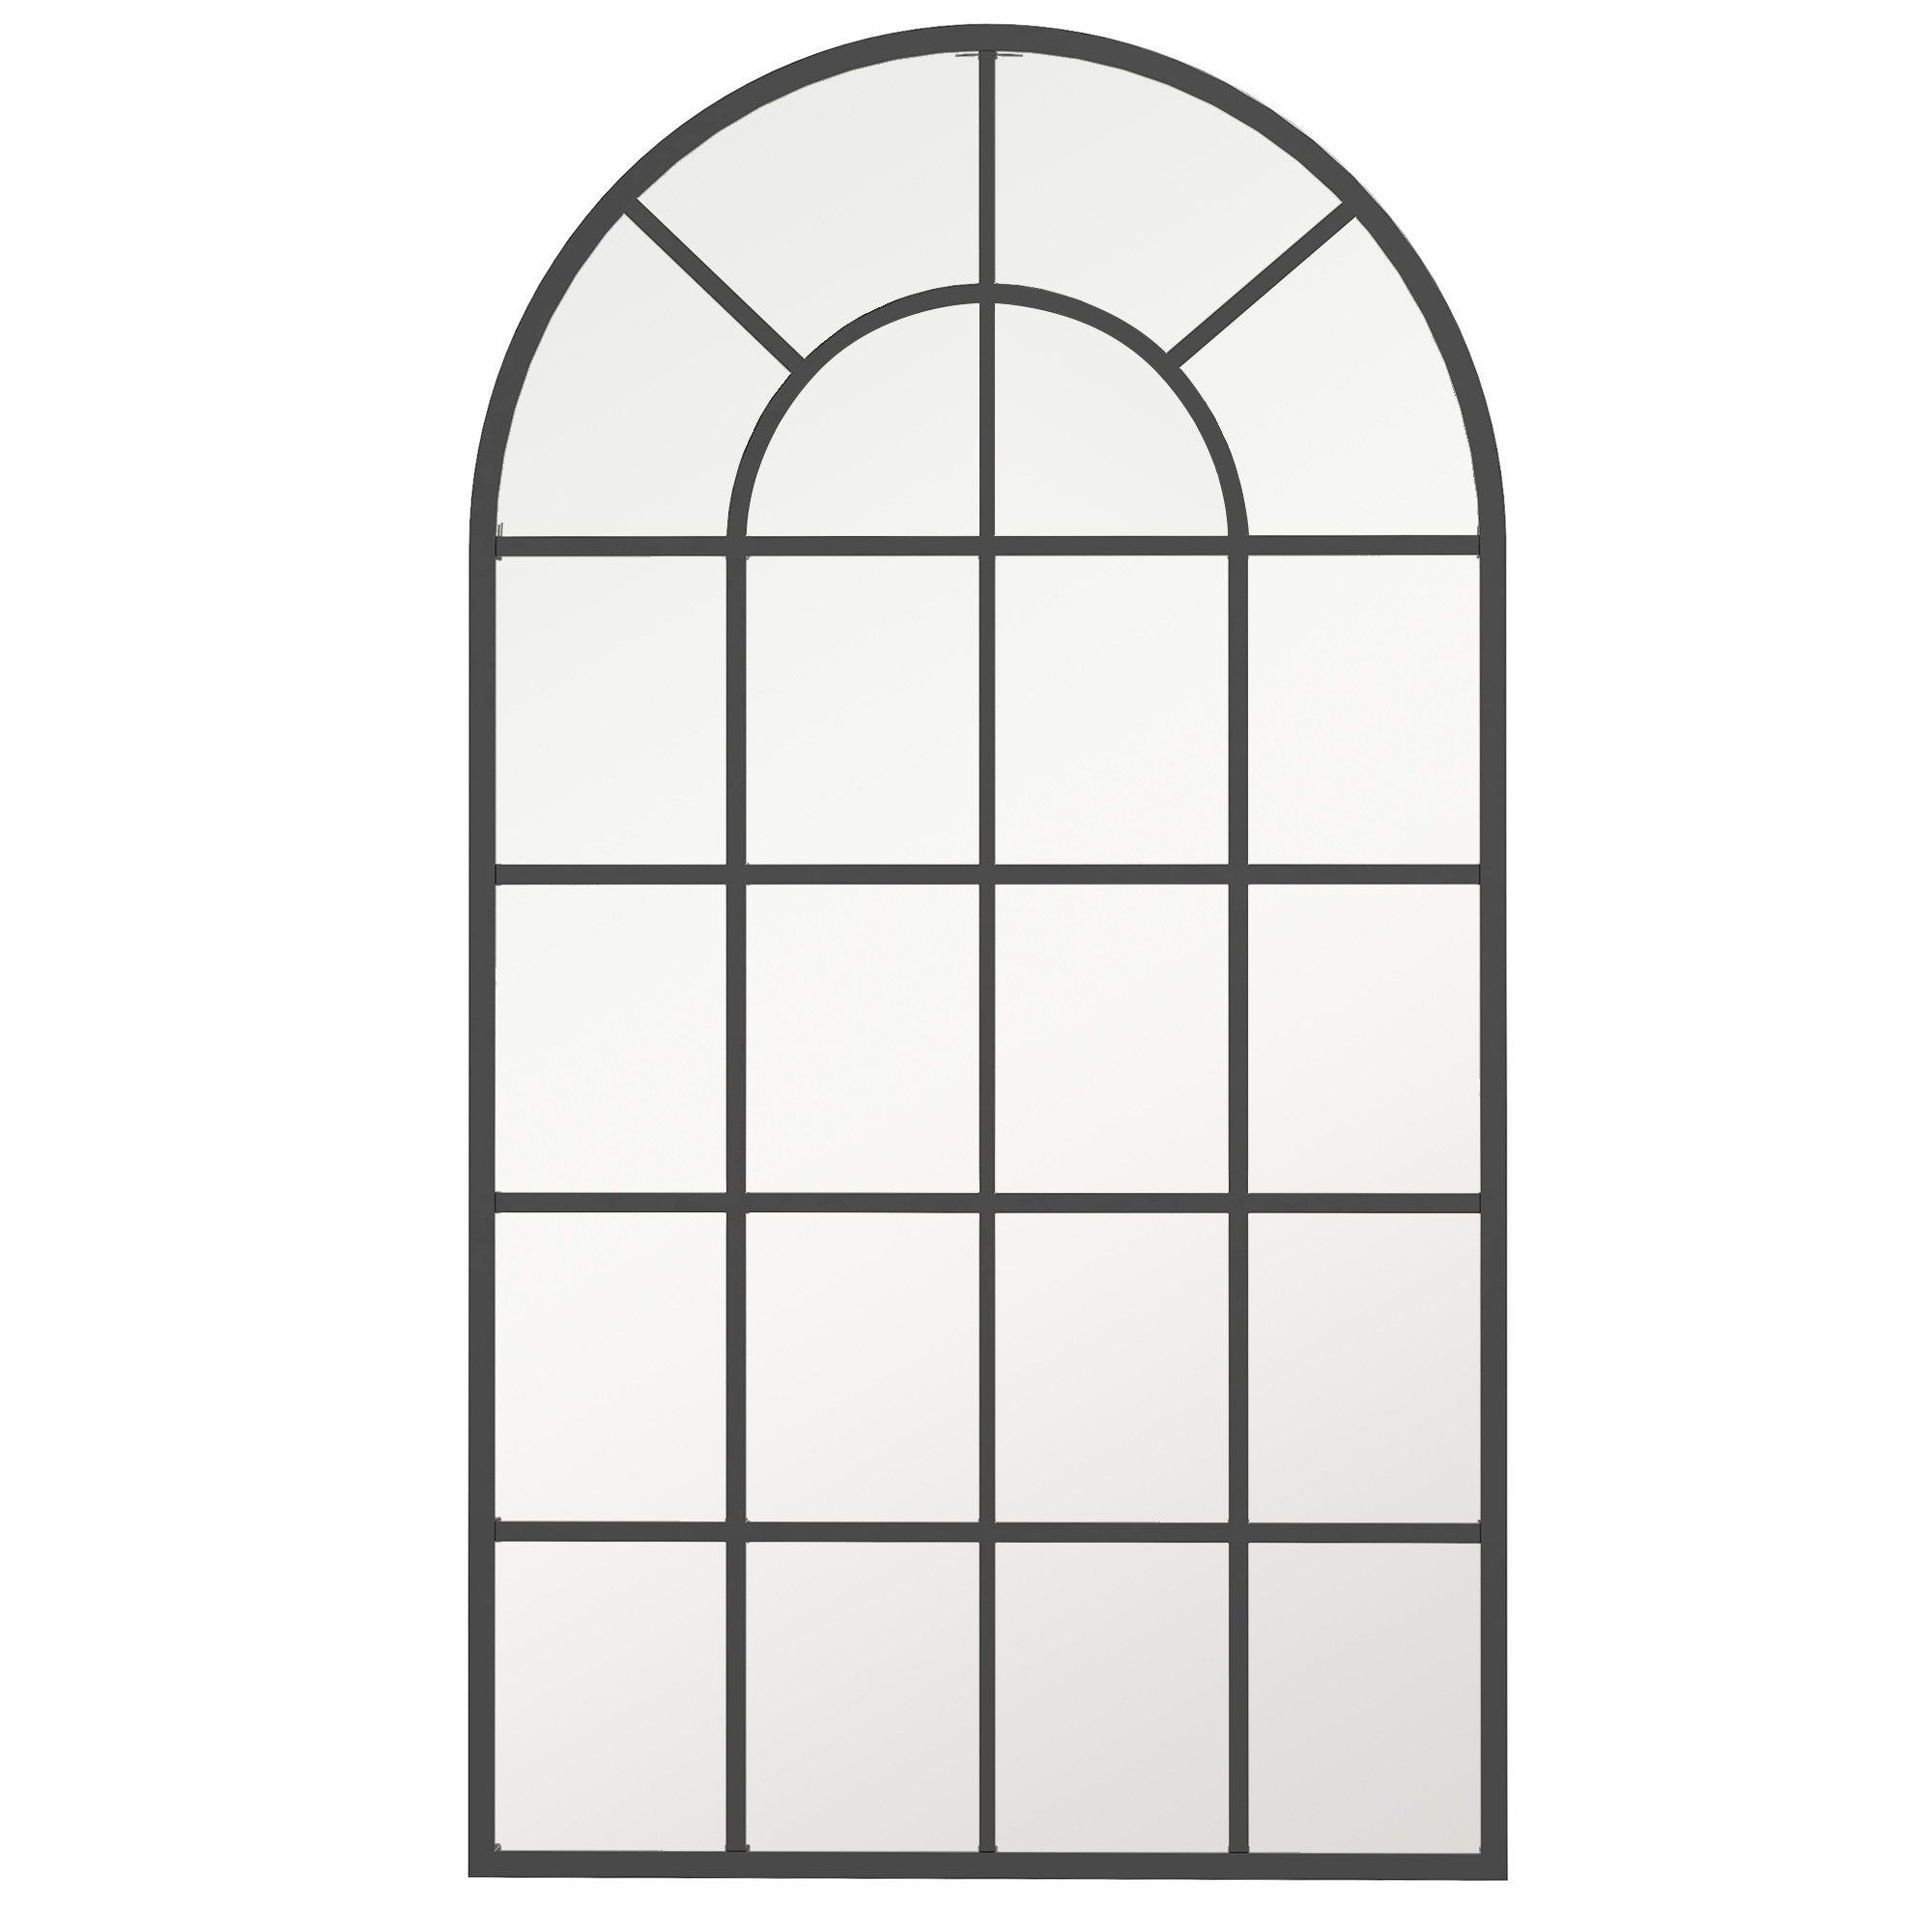 Historisch günstigster Preis HOMCOM Wandspiegel Badspiegel, Bogenfenster-Spiegel (Fensteroptik, Design Dekospiegel), Mit mehrschichtigem 1-St